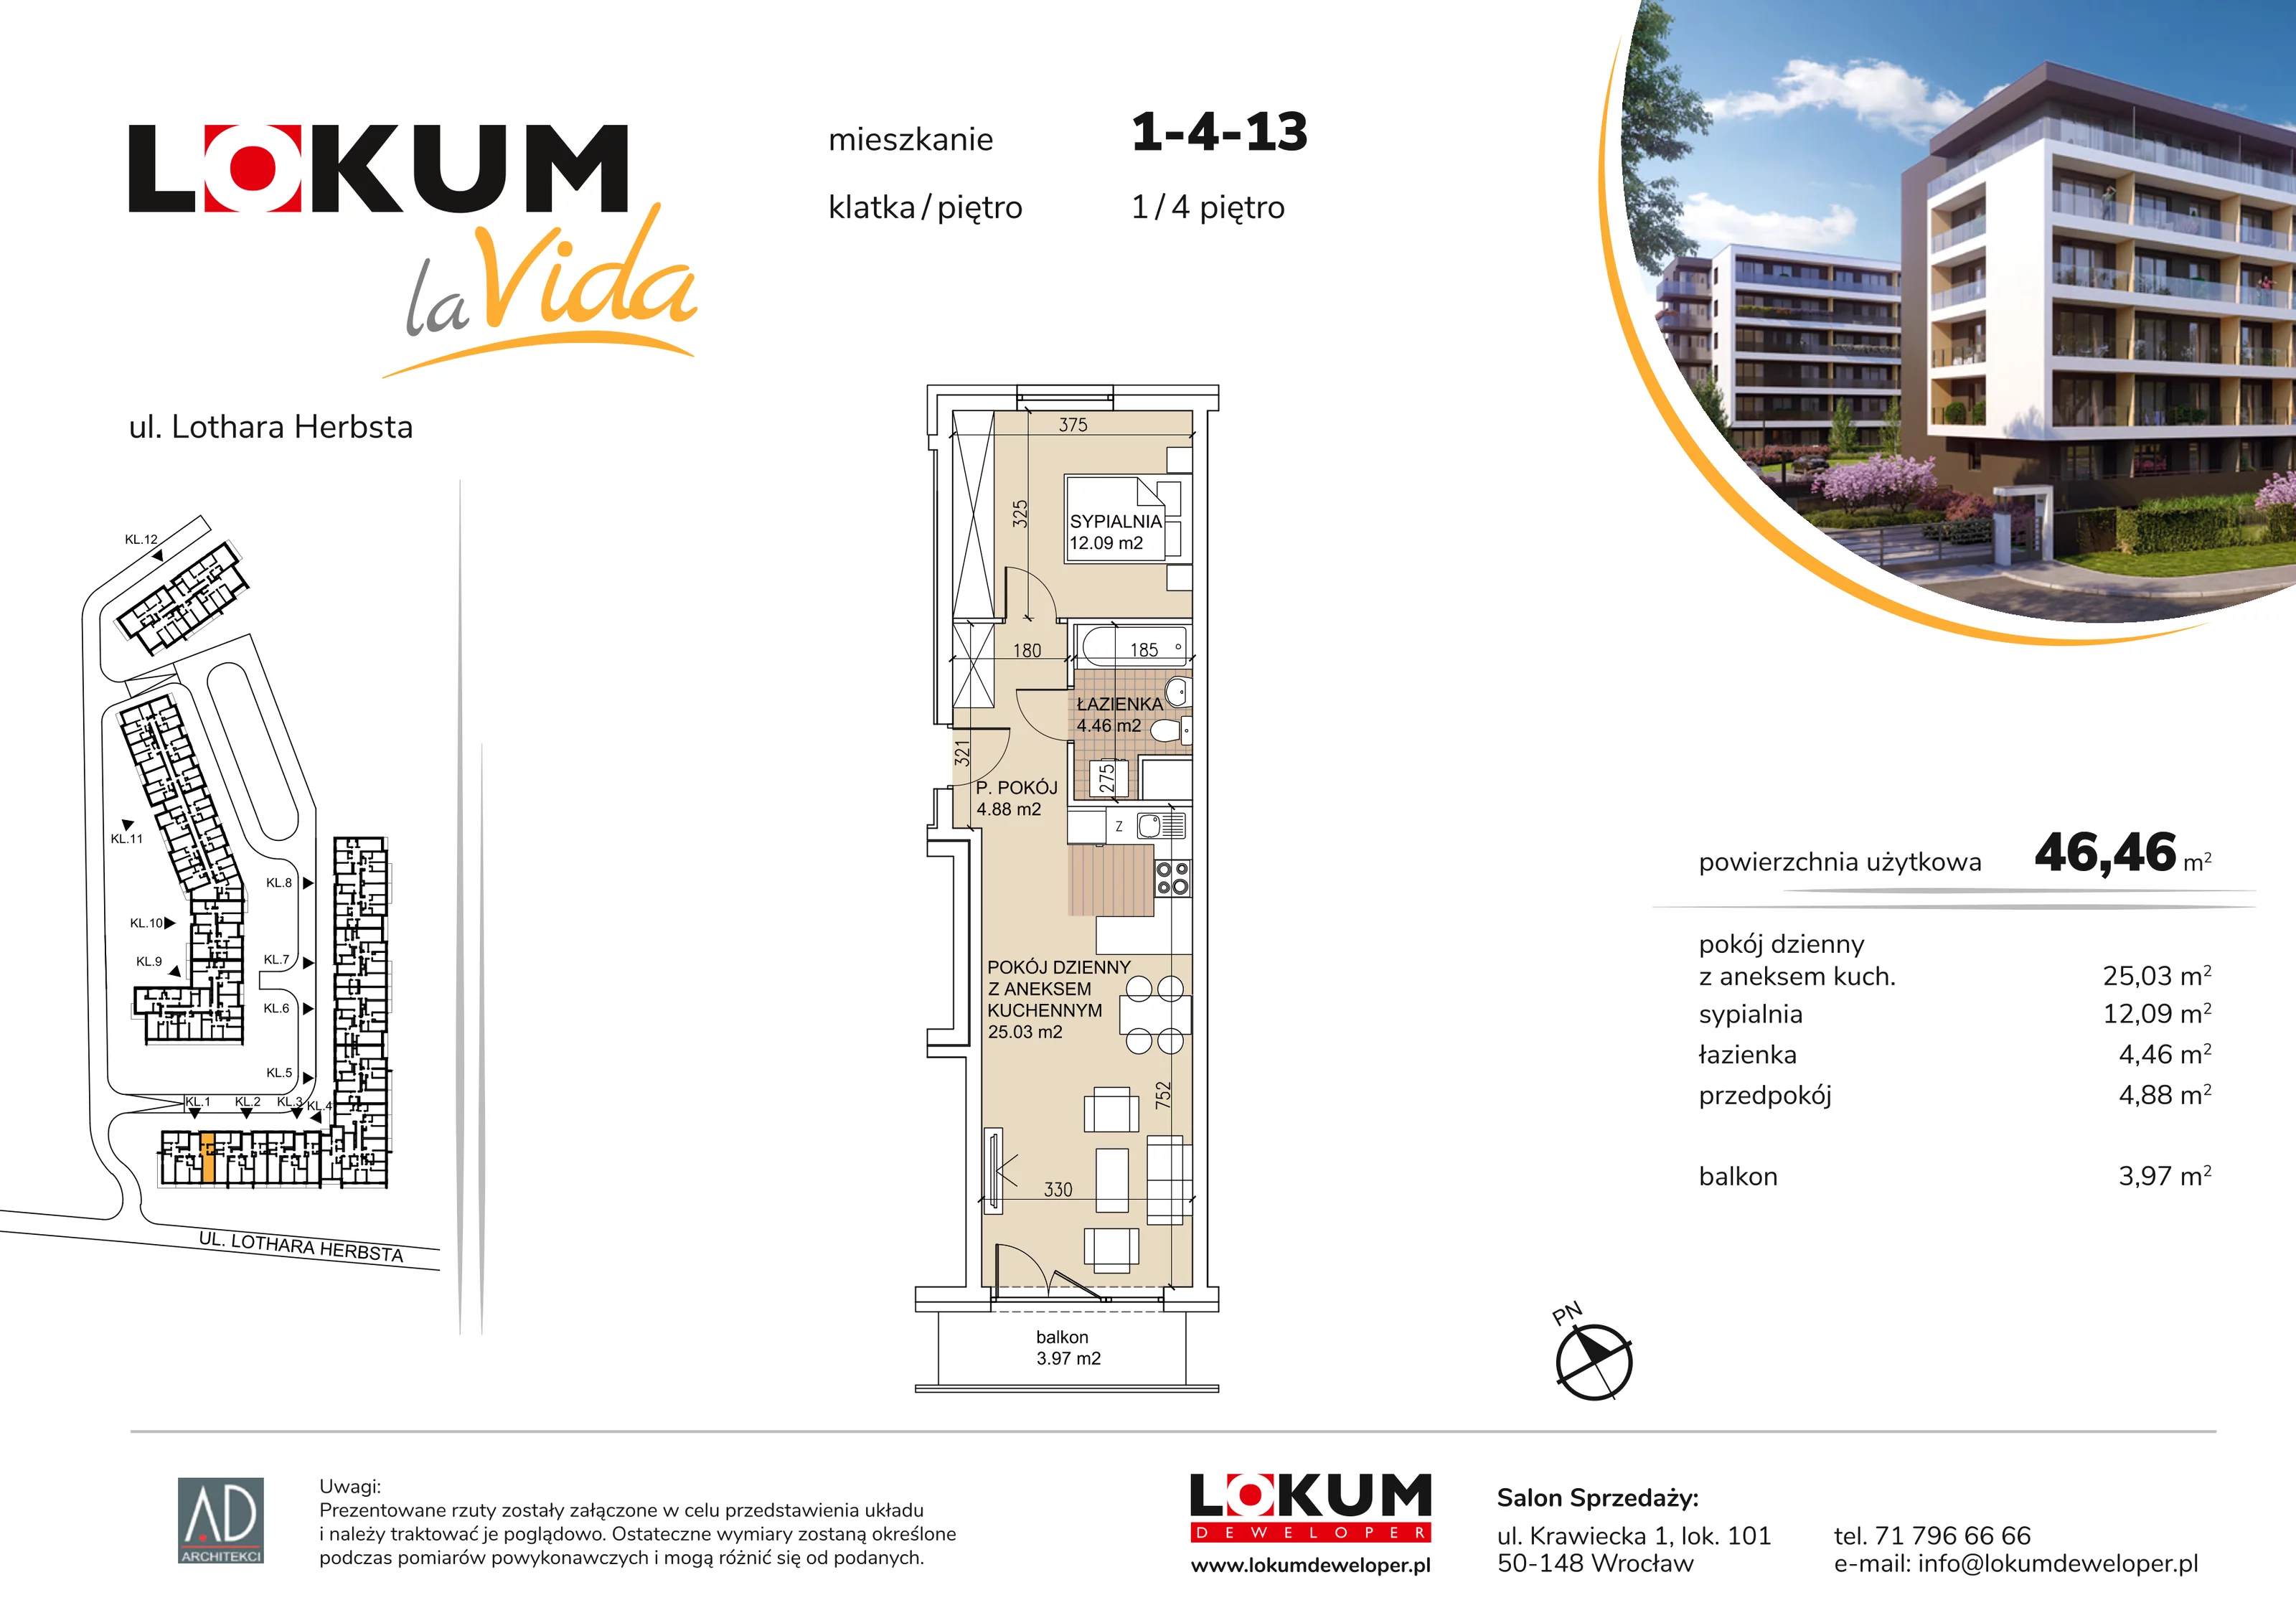 Mieszkanie 46,46 m², piętro 4, oferta nr 1-4-13, Lokum la Vida, Wrocław, Sołtysowice, ul. Lothara Herbsta